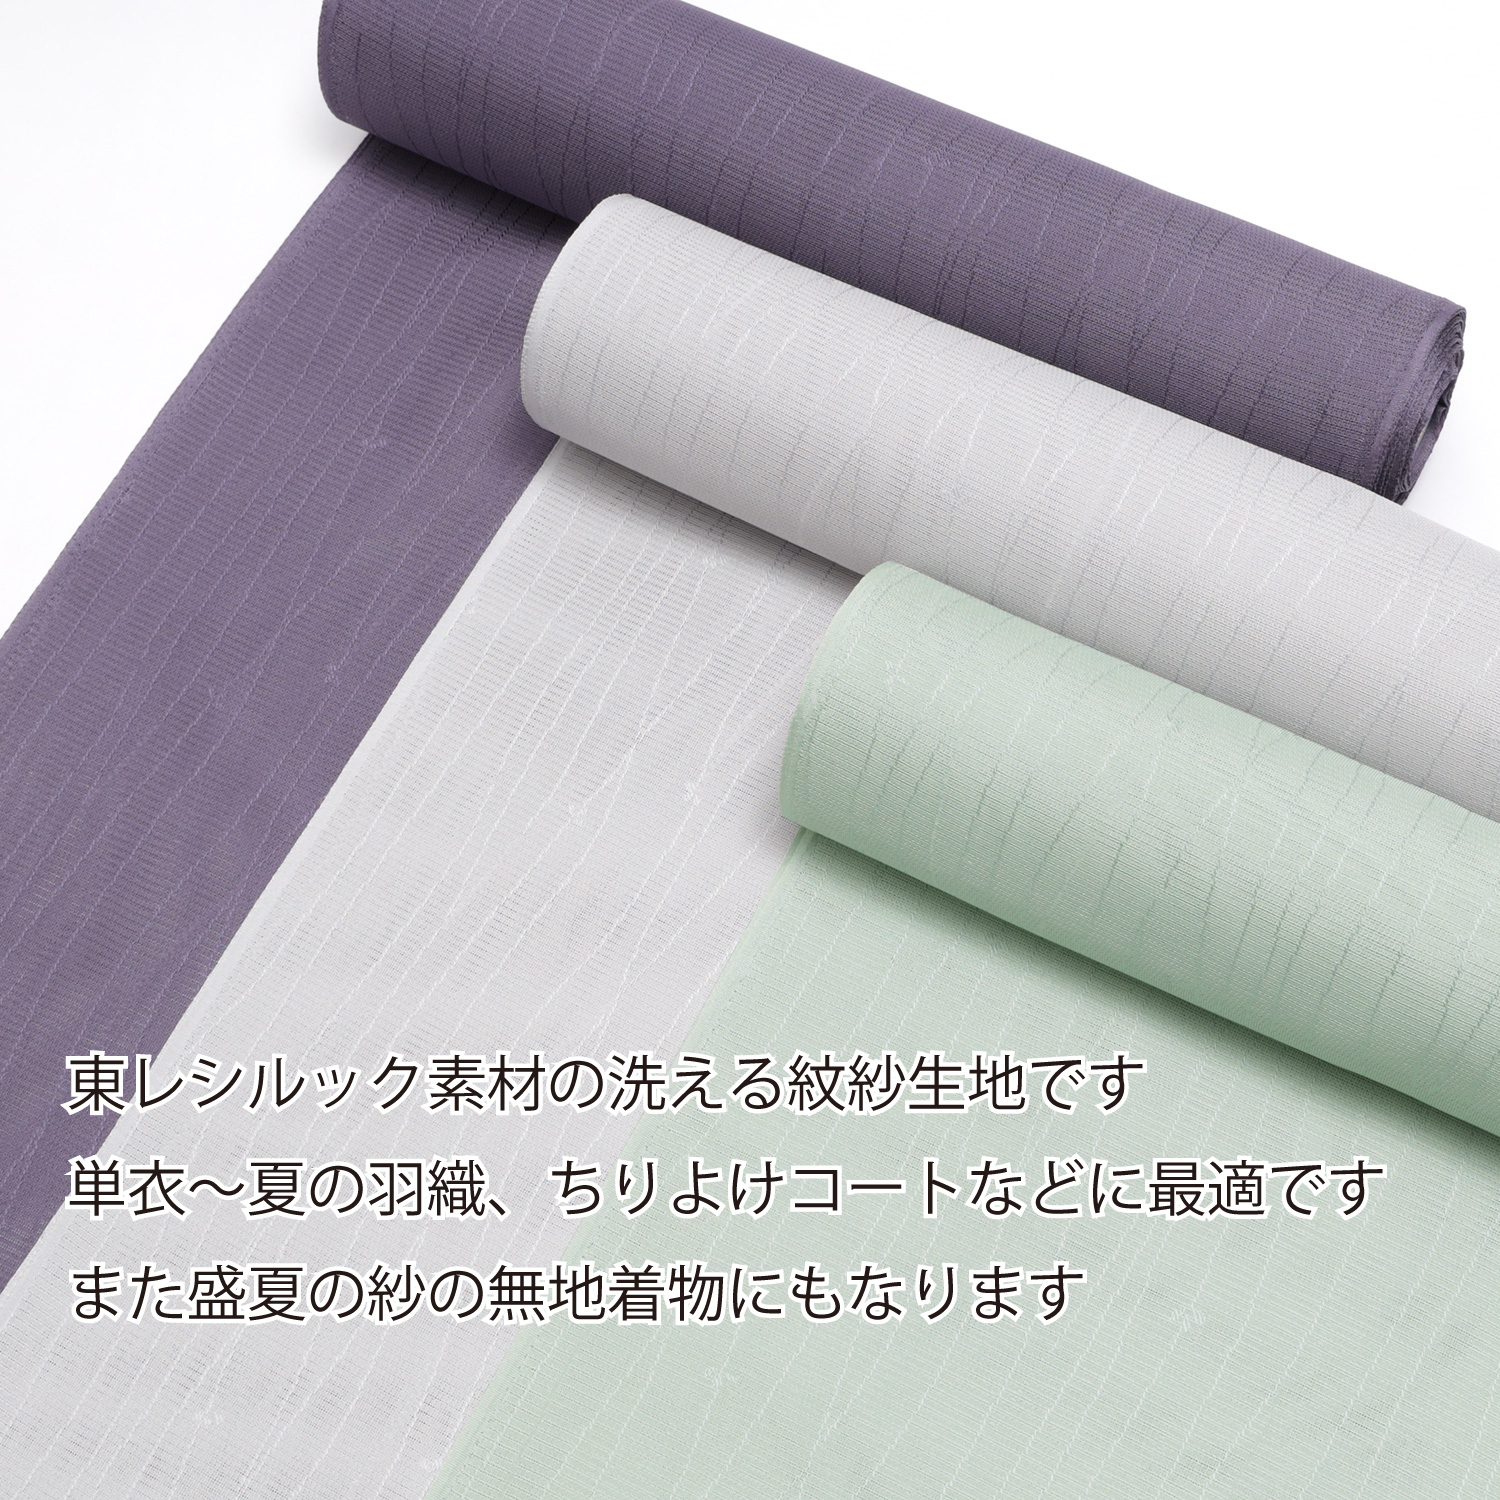  Toray si look .. однотонная ткань ткань ткань . лето кимоно ... кимоно пальто перо тканый одиночный .. лето высококлассный полиэстер зеленый фиолетовый серый серебряный . лиловый зеленый ..